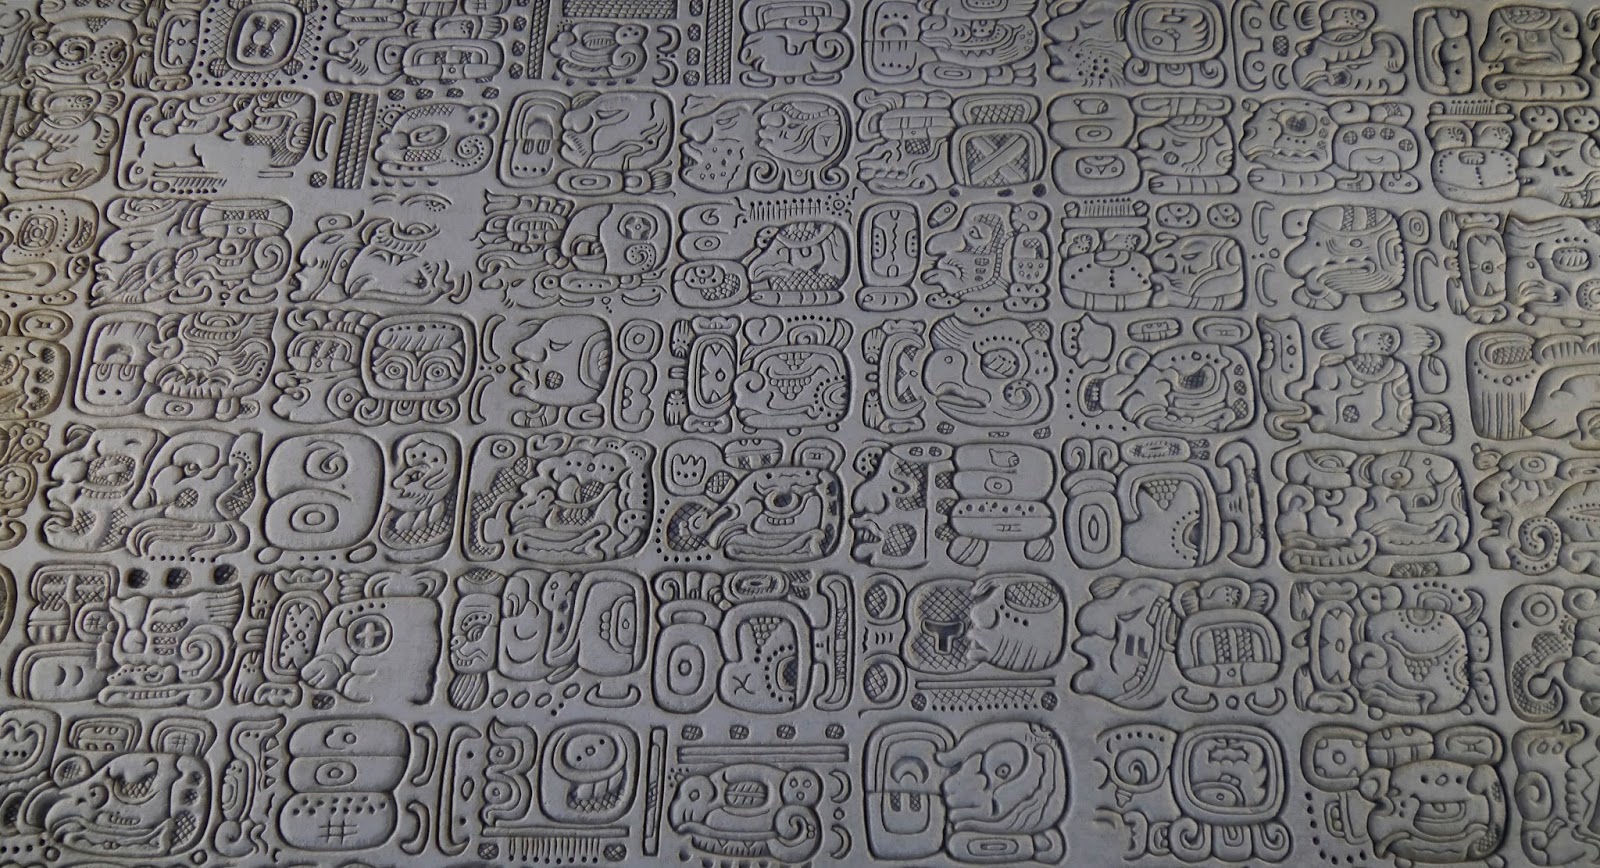 Произведение майя. Иероглифическая письменность Майя. Письменность племени Майя. Алфавит индейцев Майя. Письмена индейцев Майя.